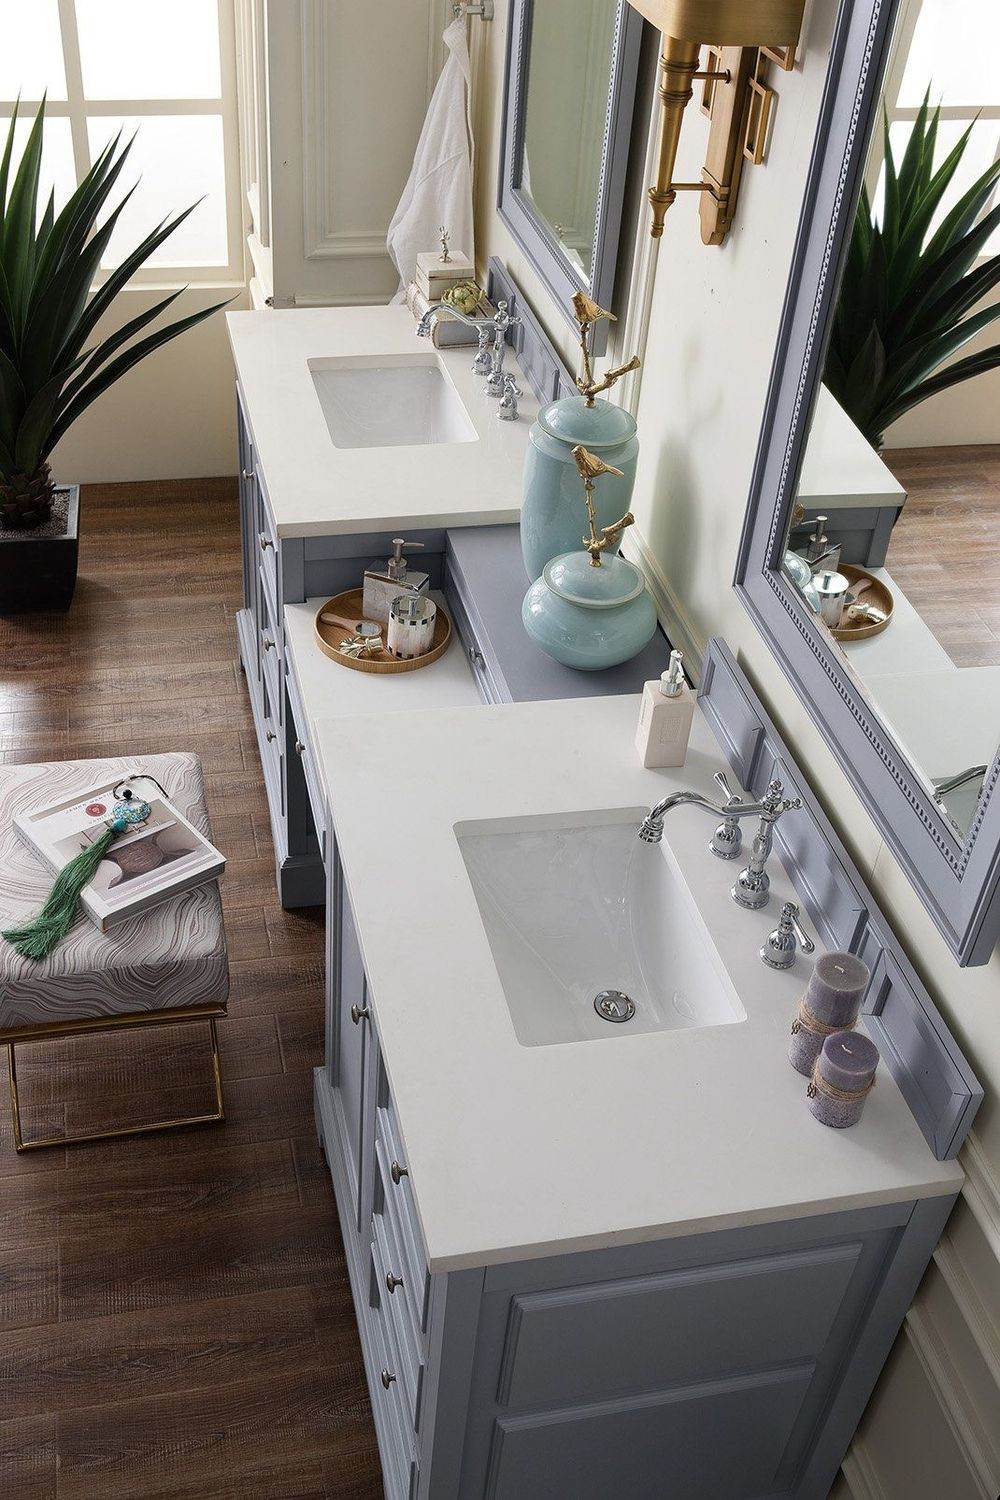 Silver Bathroom Vanity
 94" De Soto Silver Gray Double Sink Bathroom Vanity